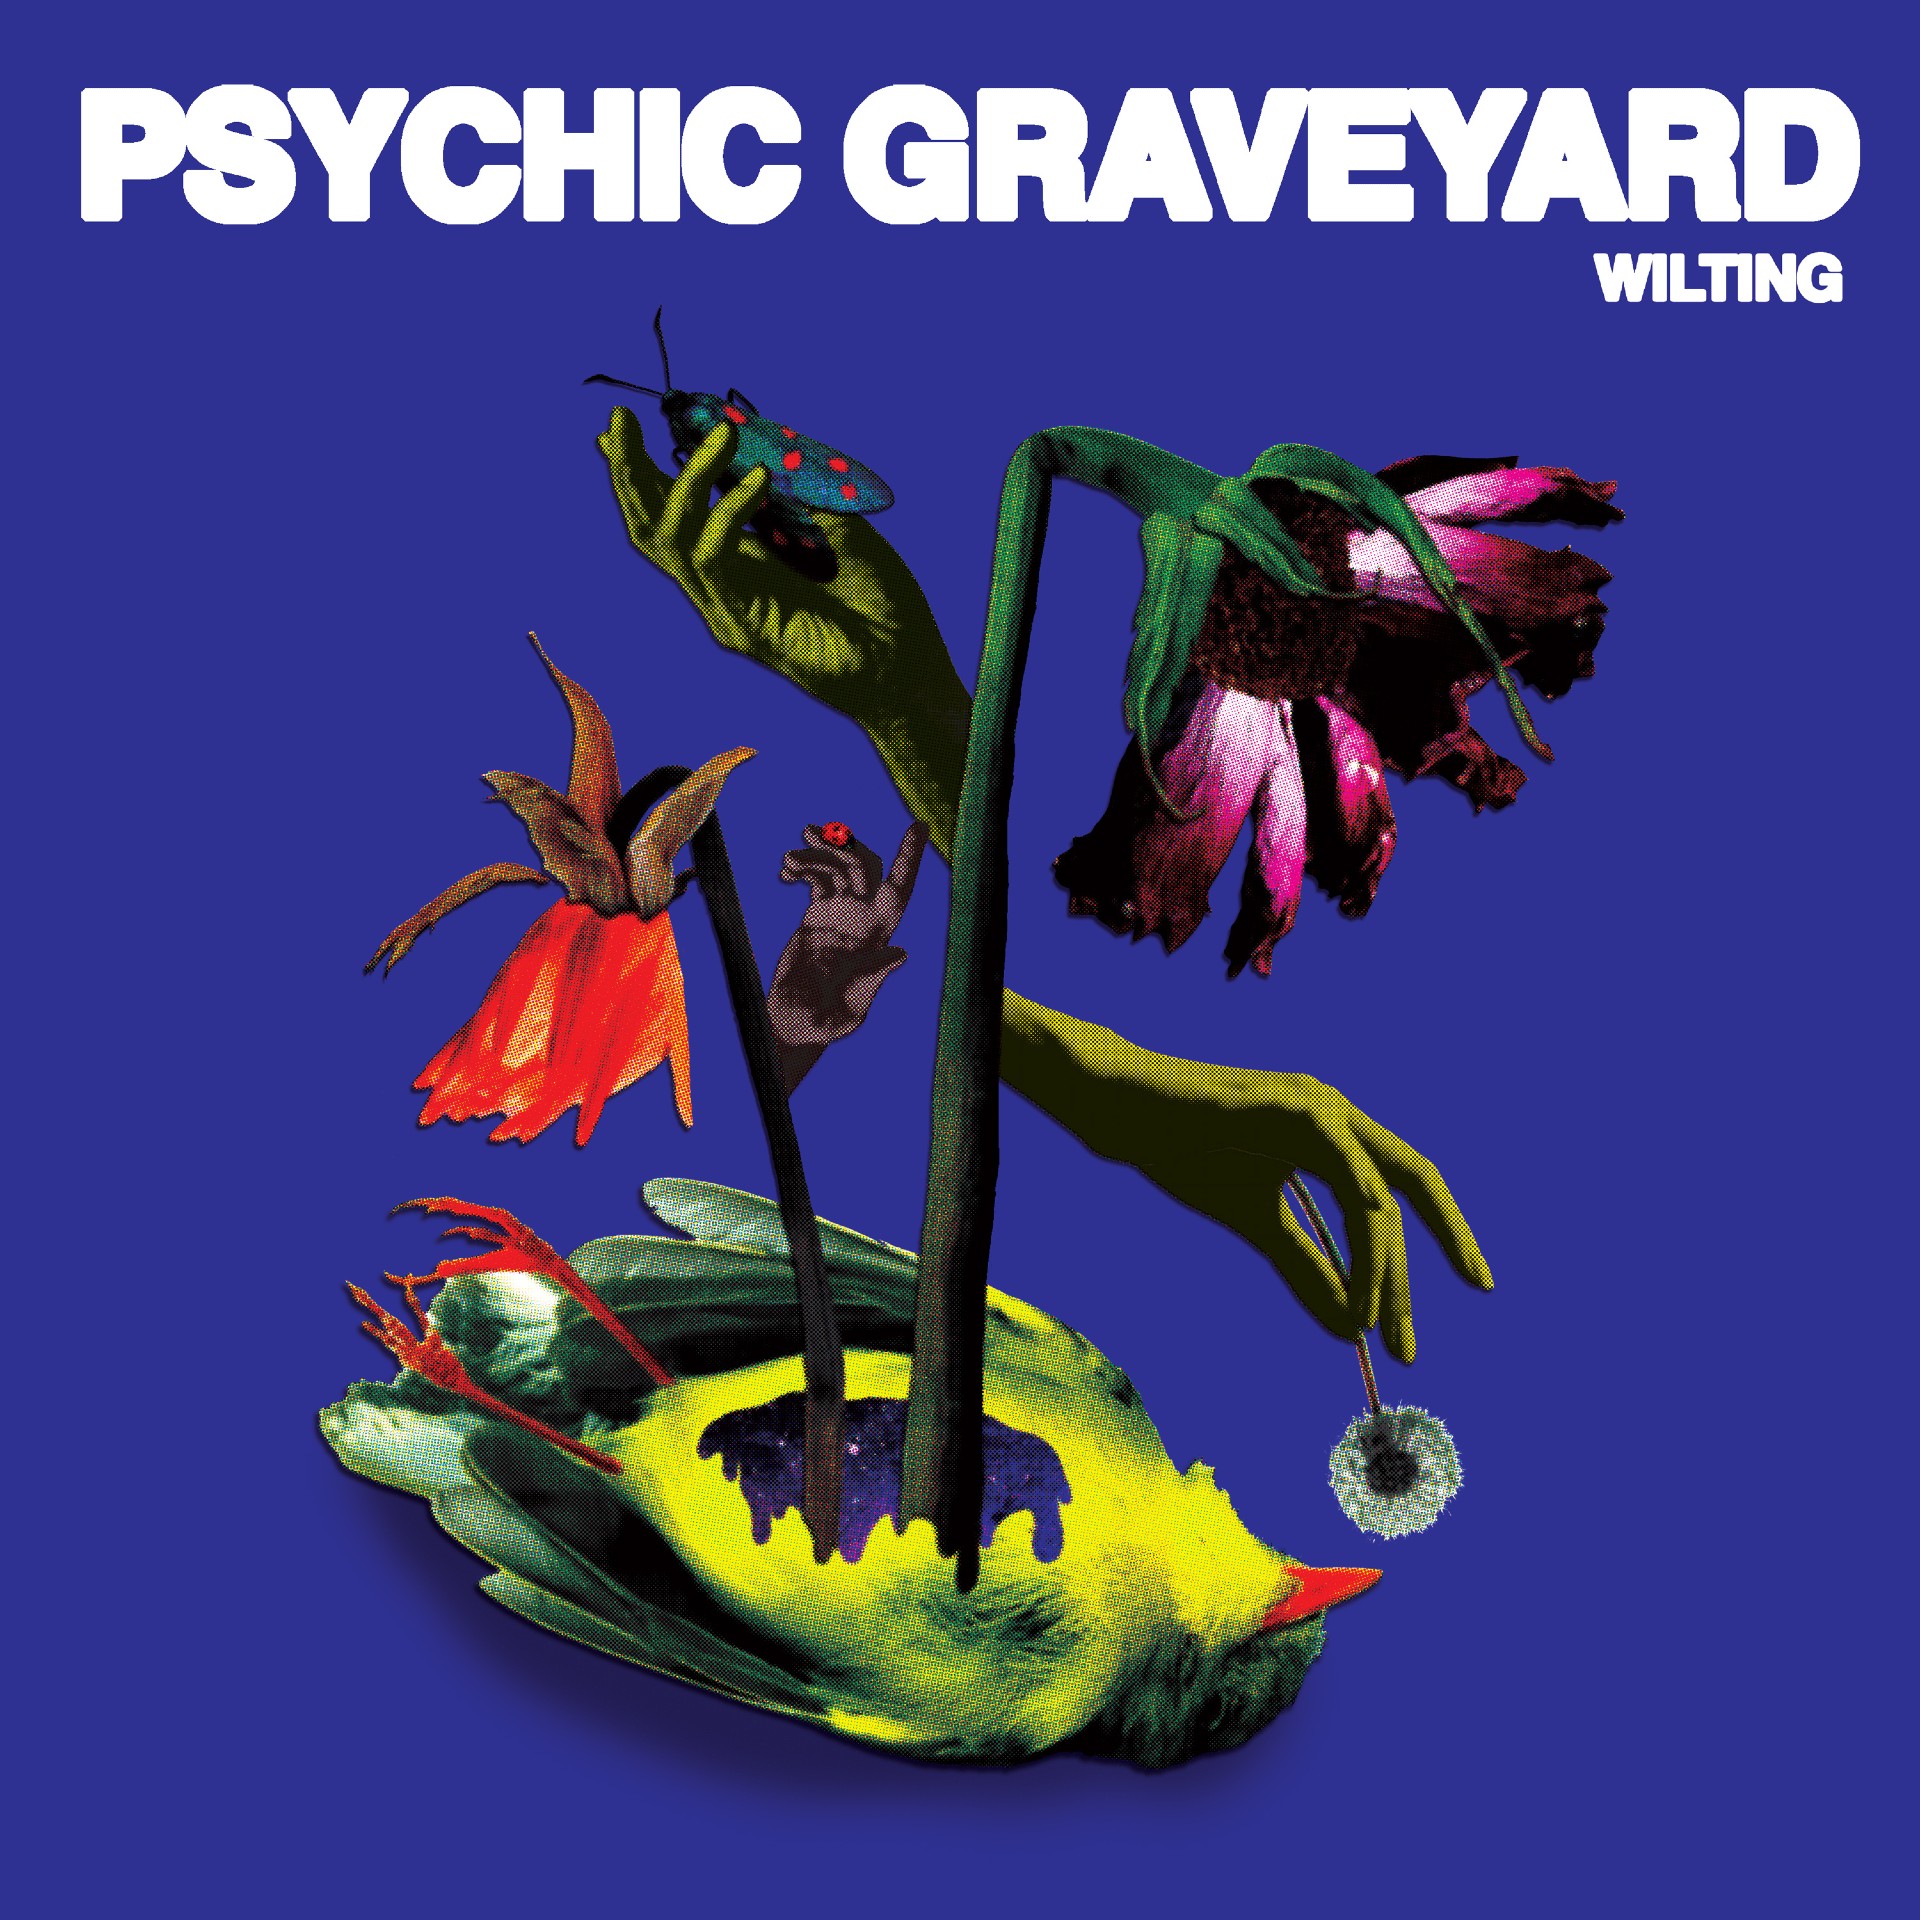 Psychic Graveyard ‘Wilting’ album artwork